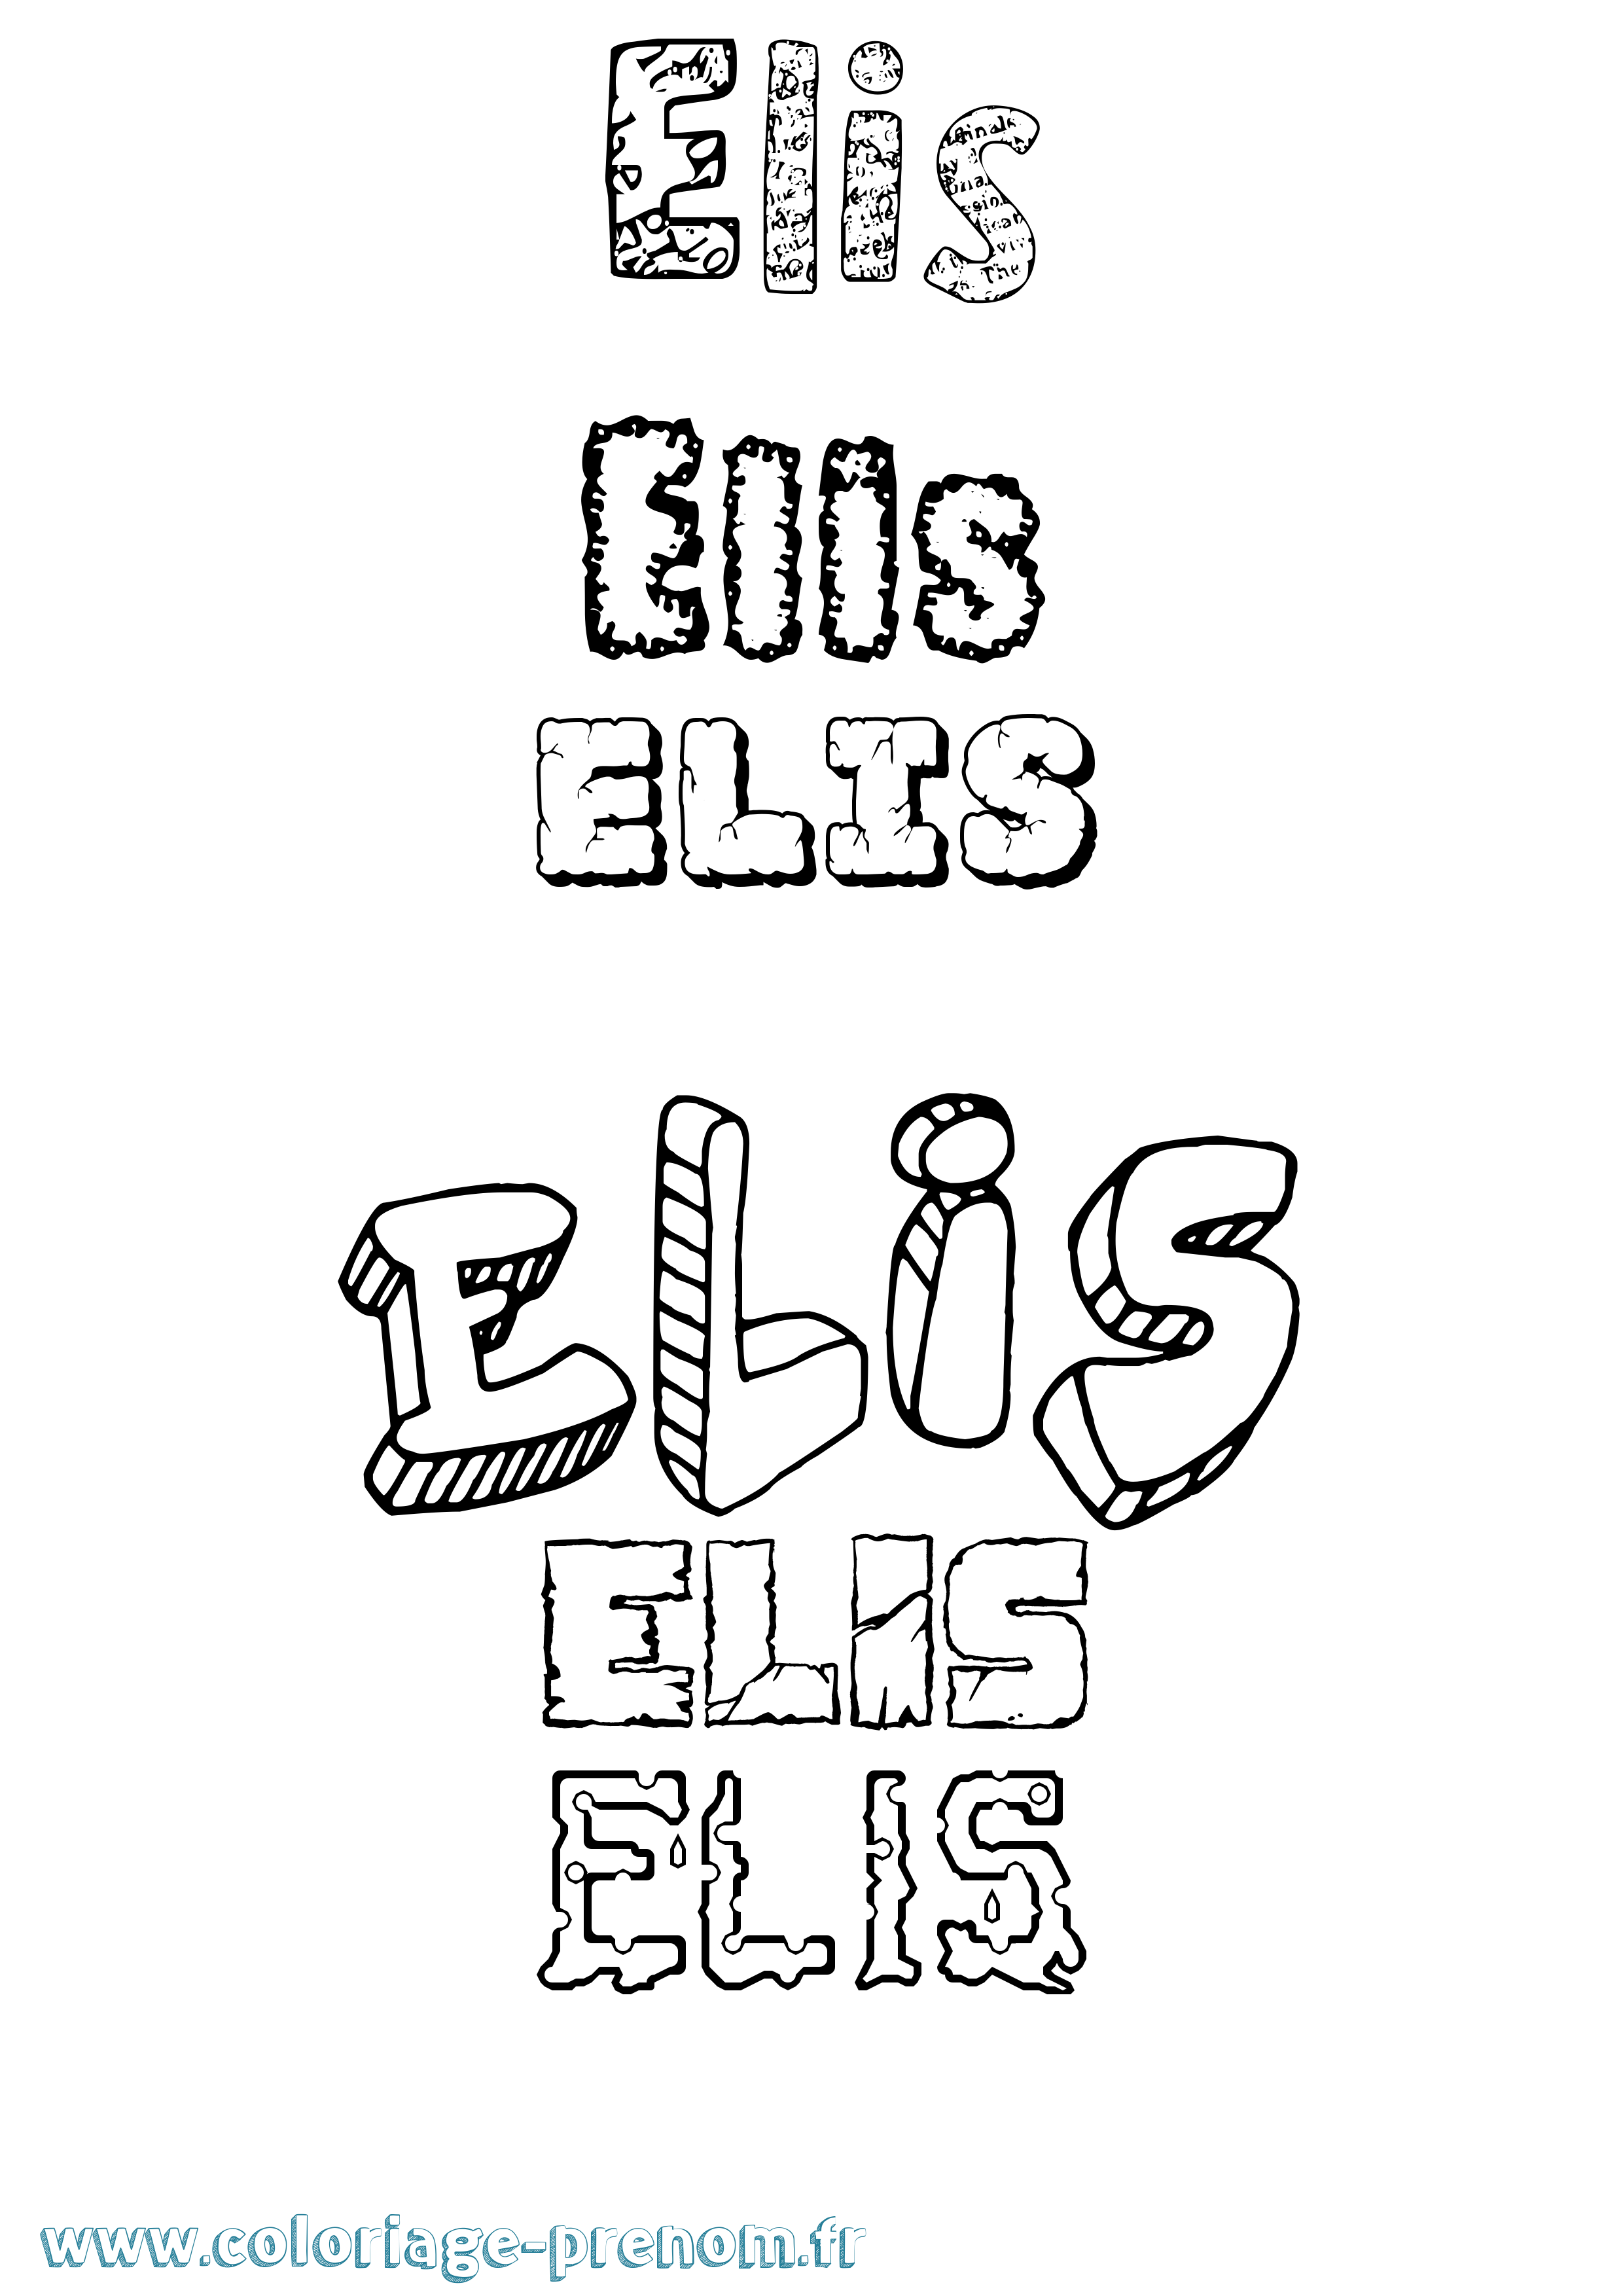 Coloriage prénom Elis Destructuré